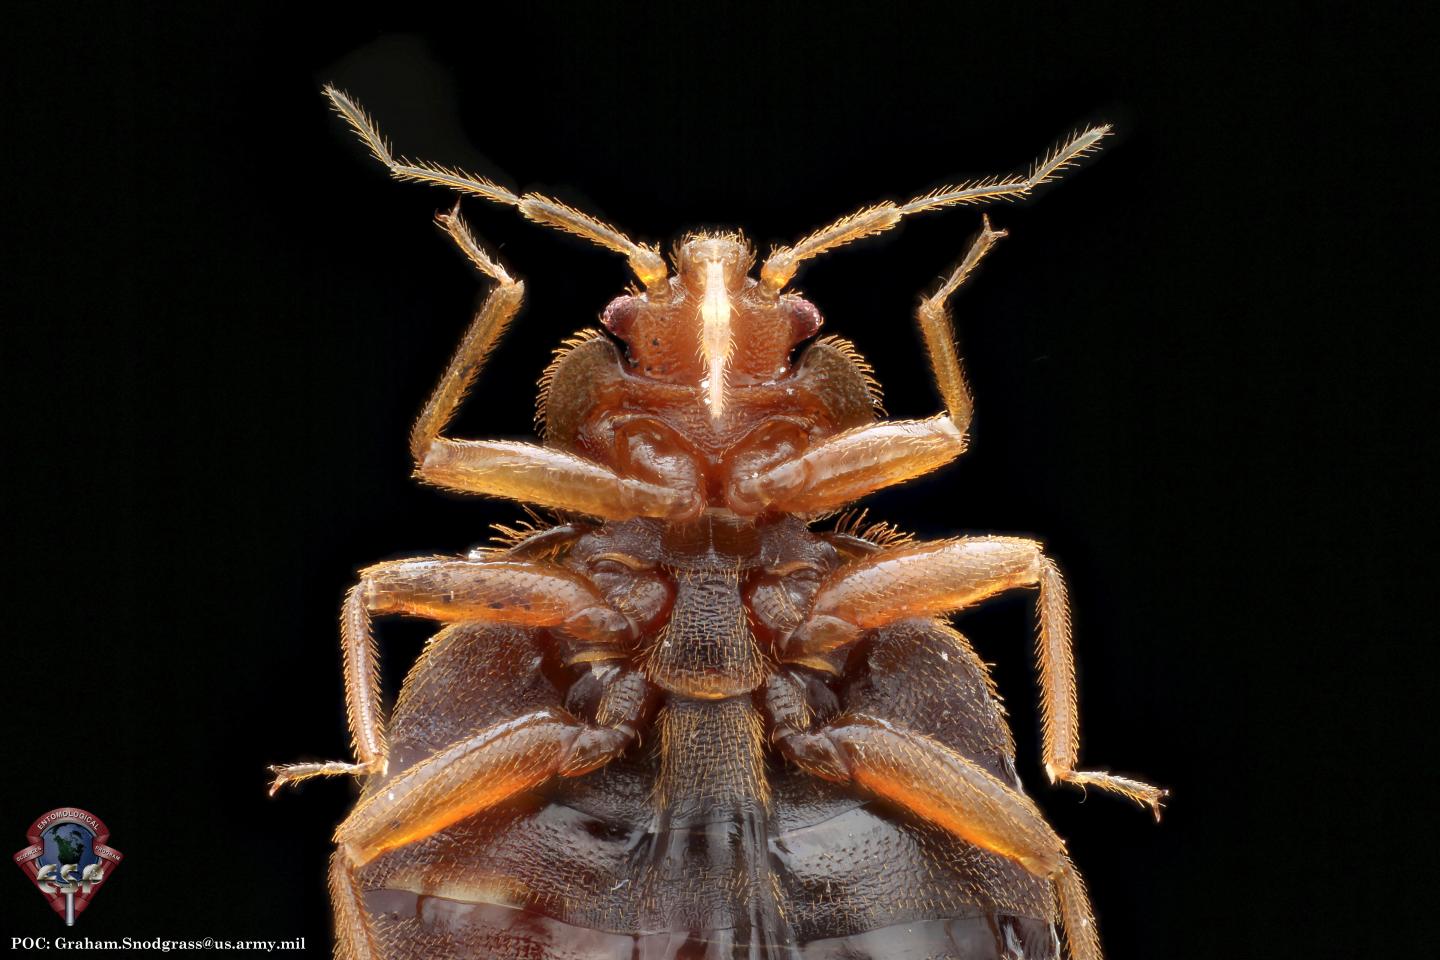 The Common Bed Bug (Cimex lectularius)